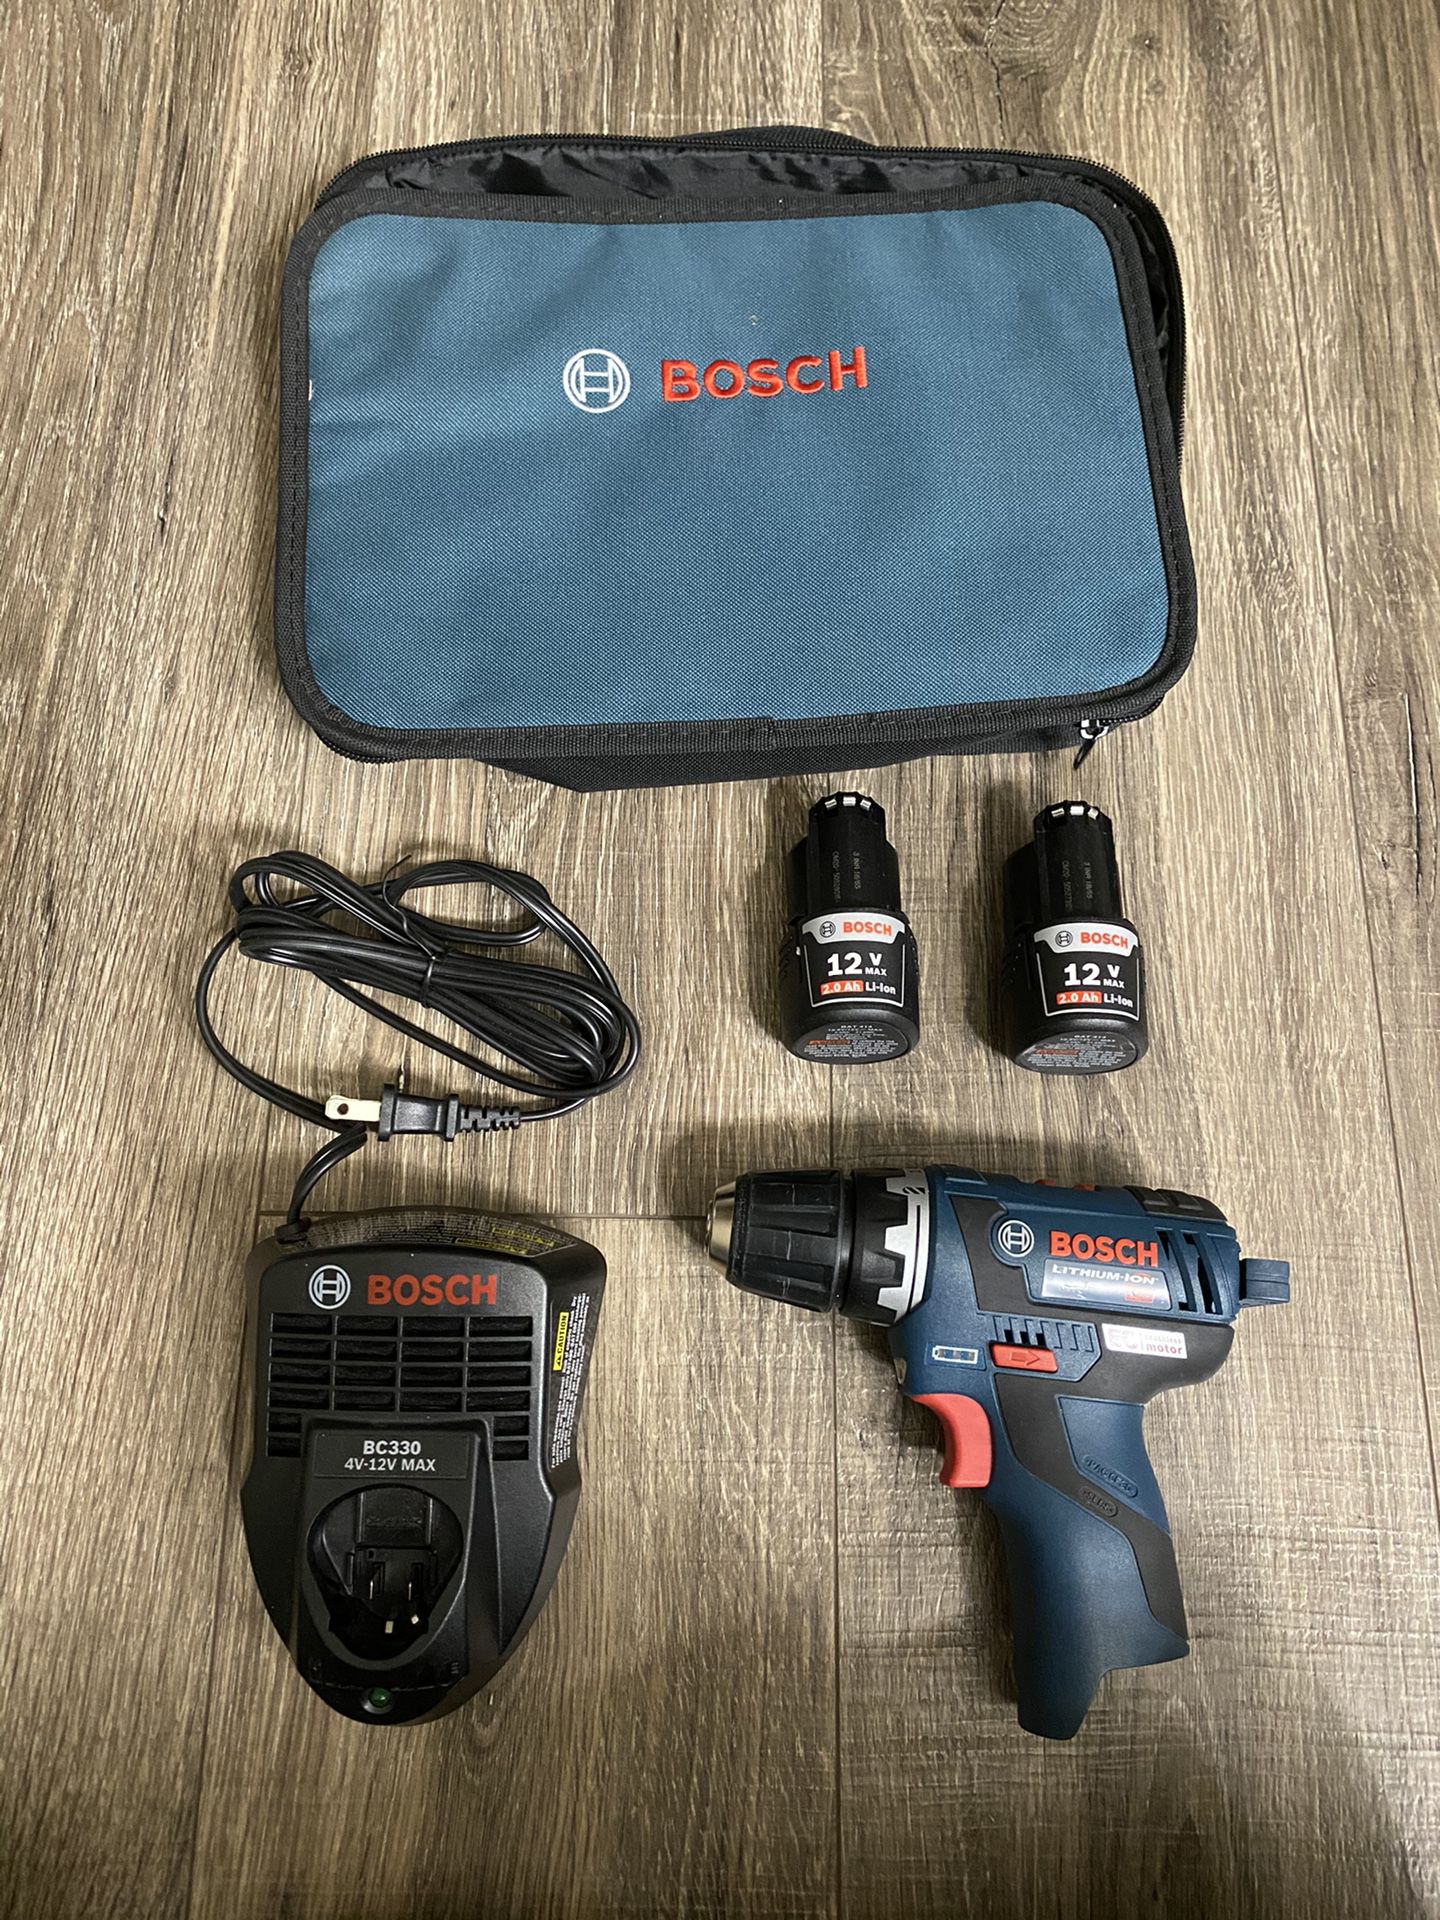 Bosch PS32-02 Brushless 12V Drill Kit